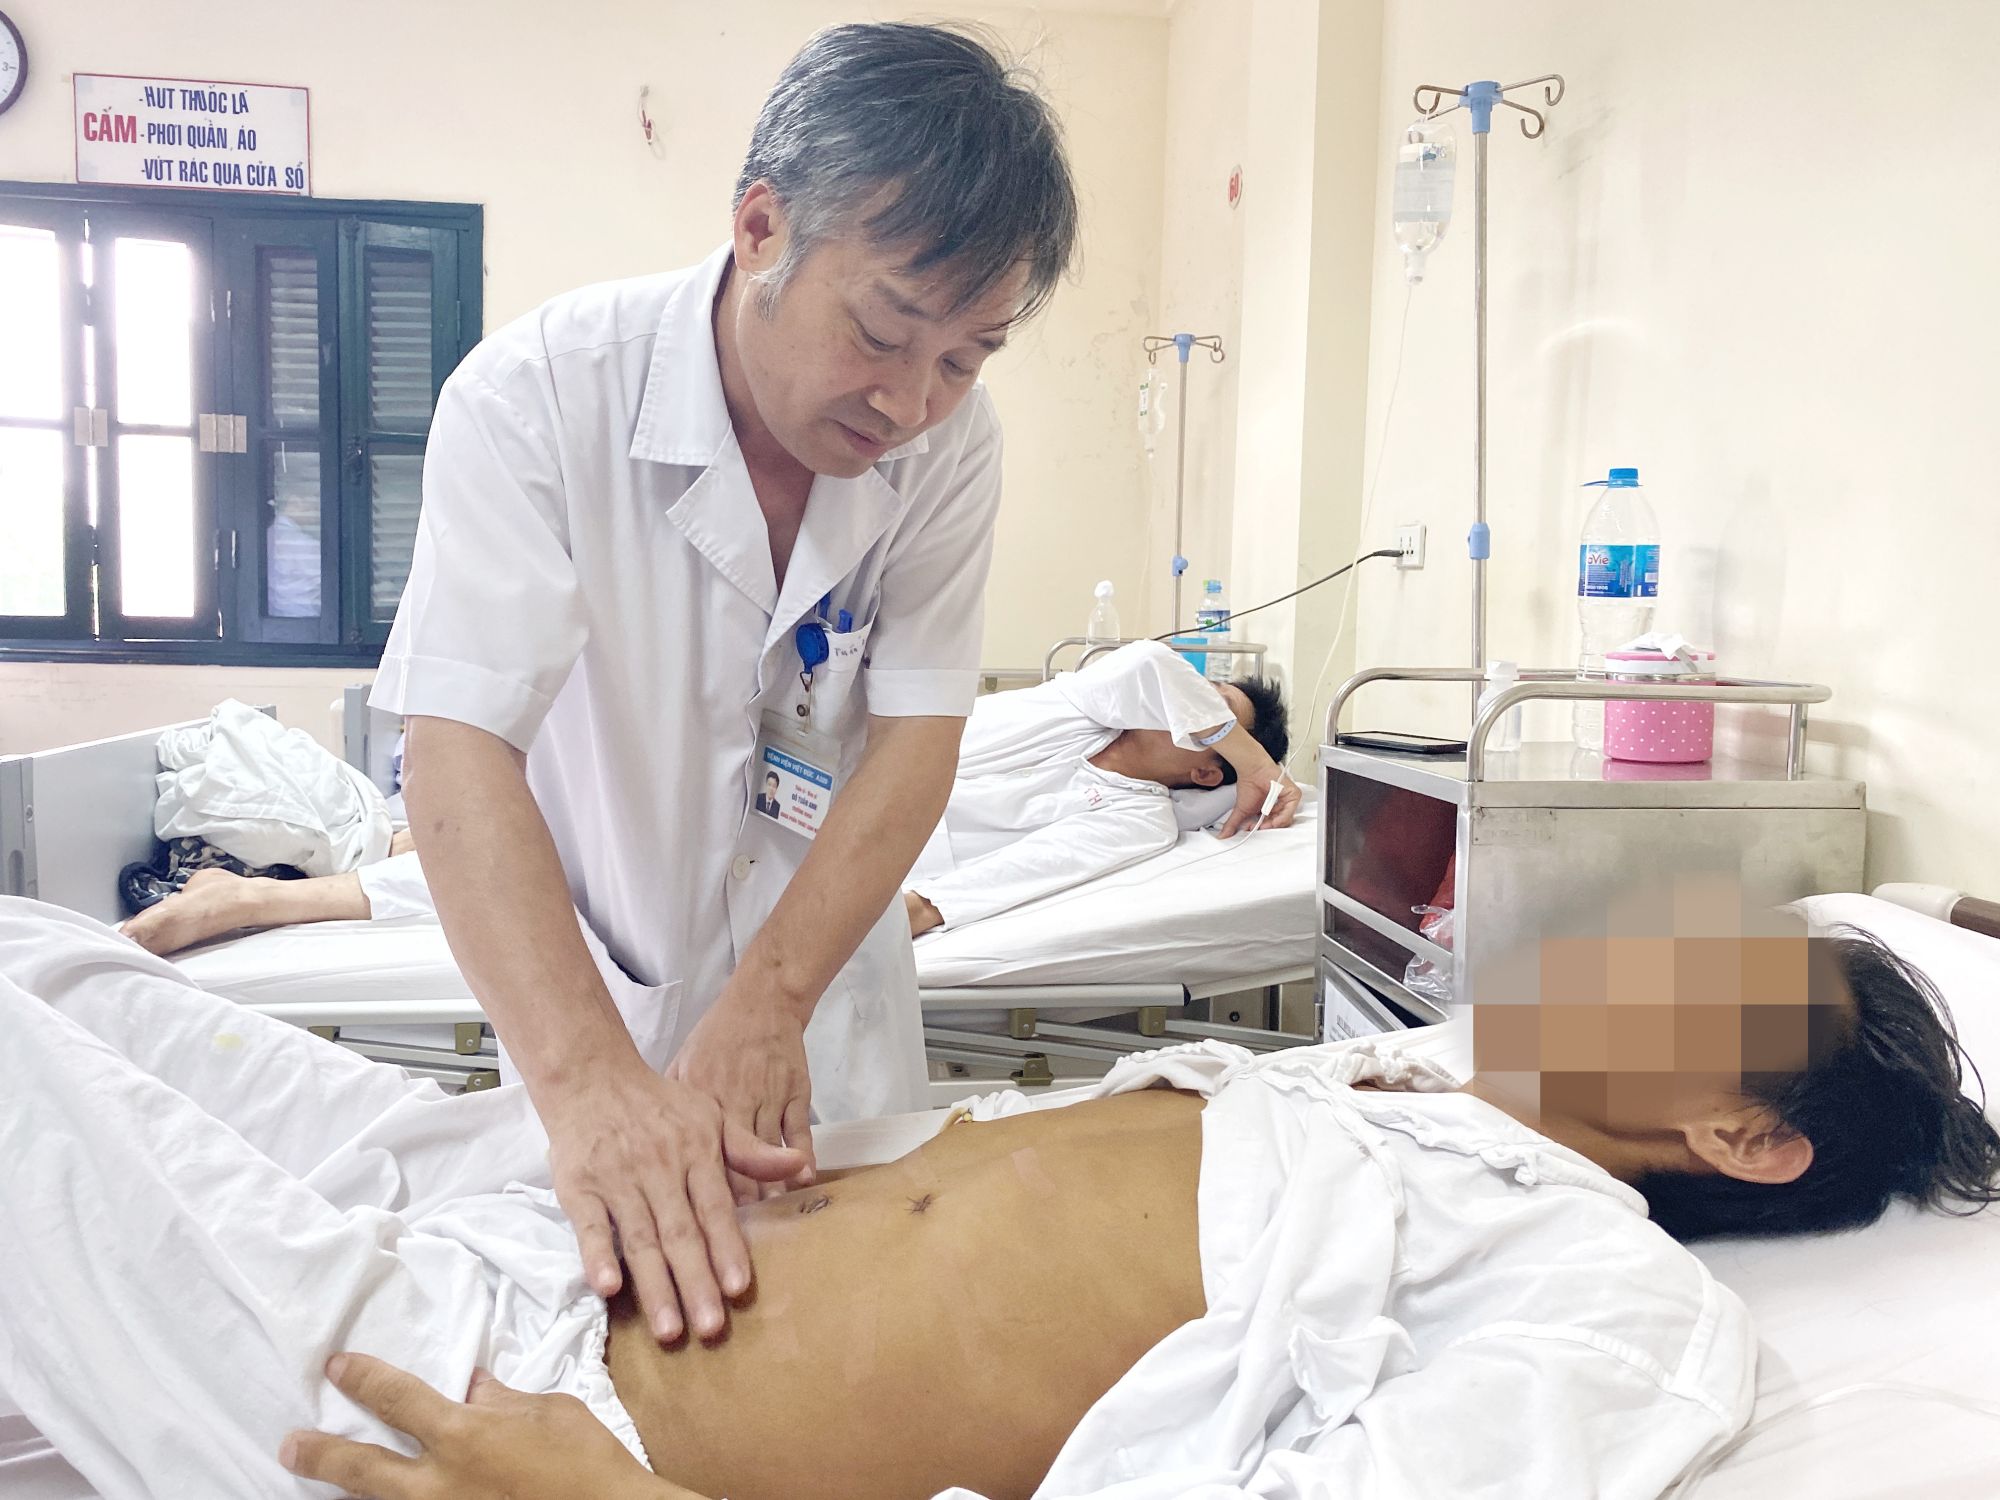 Vết sẹo “hình con rết” trên bụng người bệnh được hóa giải bằng kỹ thuật nội soi - bệnh viện Việt Đức